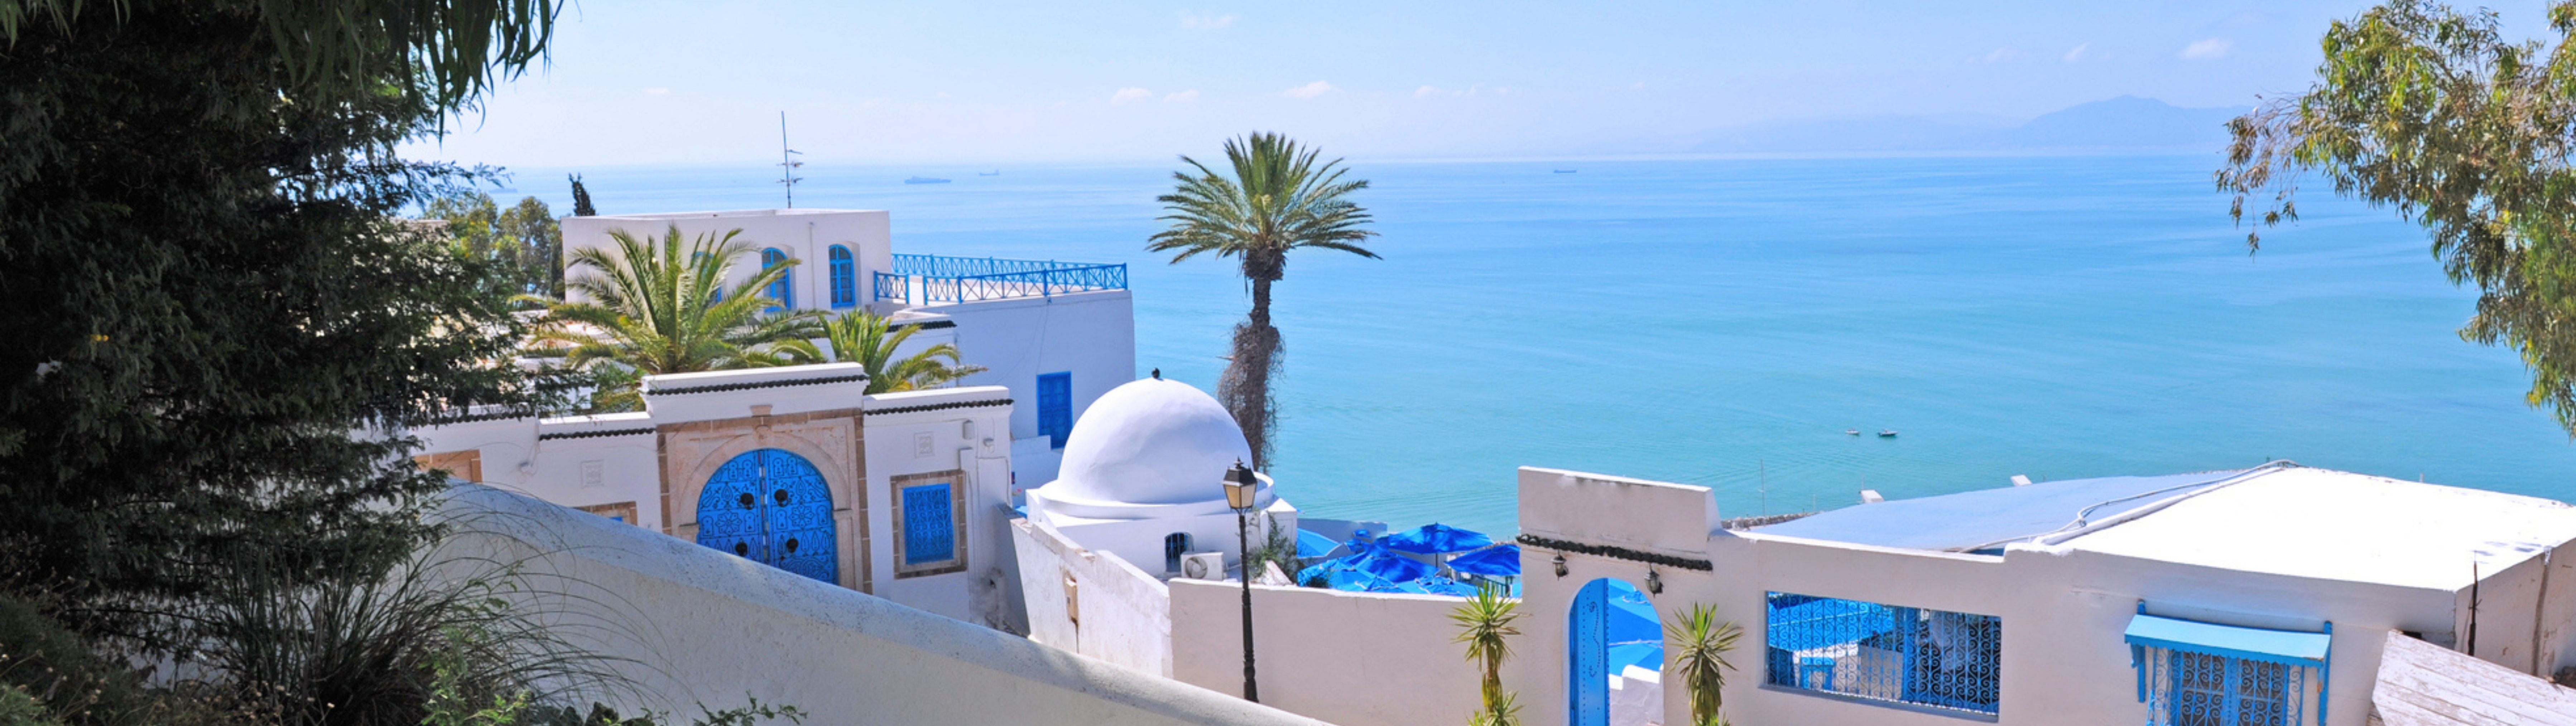 Vacances en Tunesie à petit prix